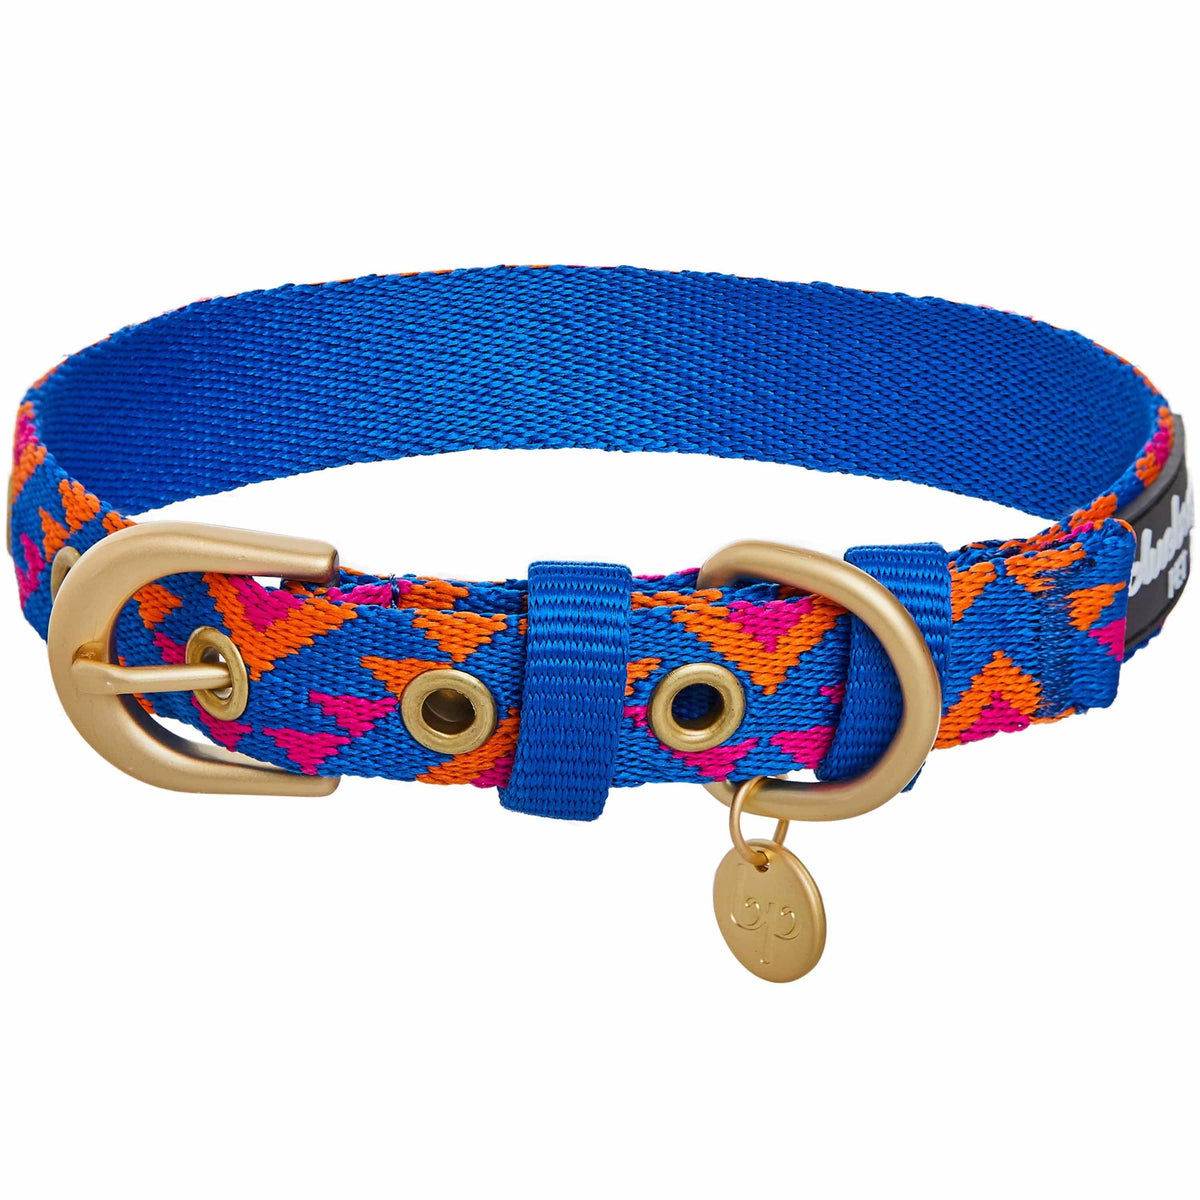 Chevron - Blueberry Uptown Dog Collar